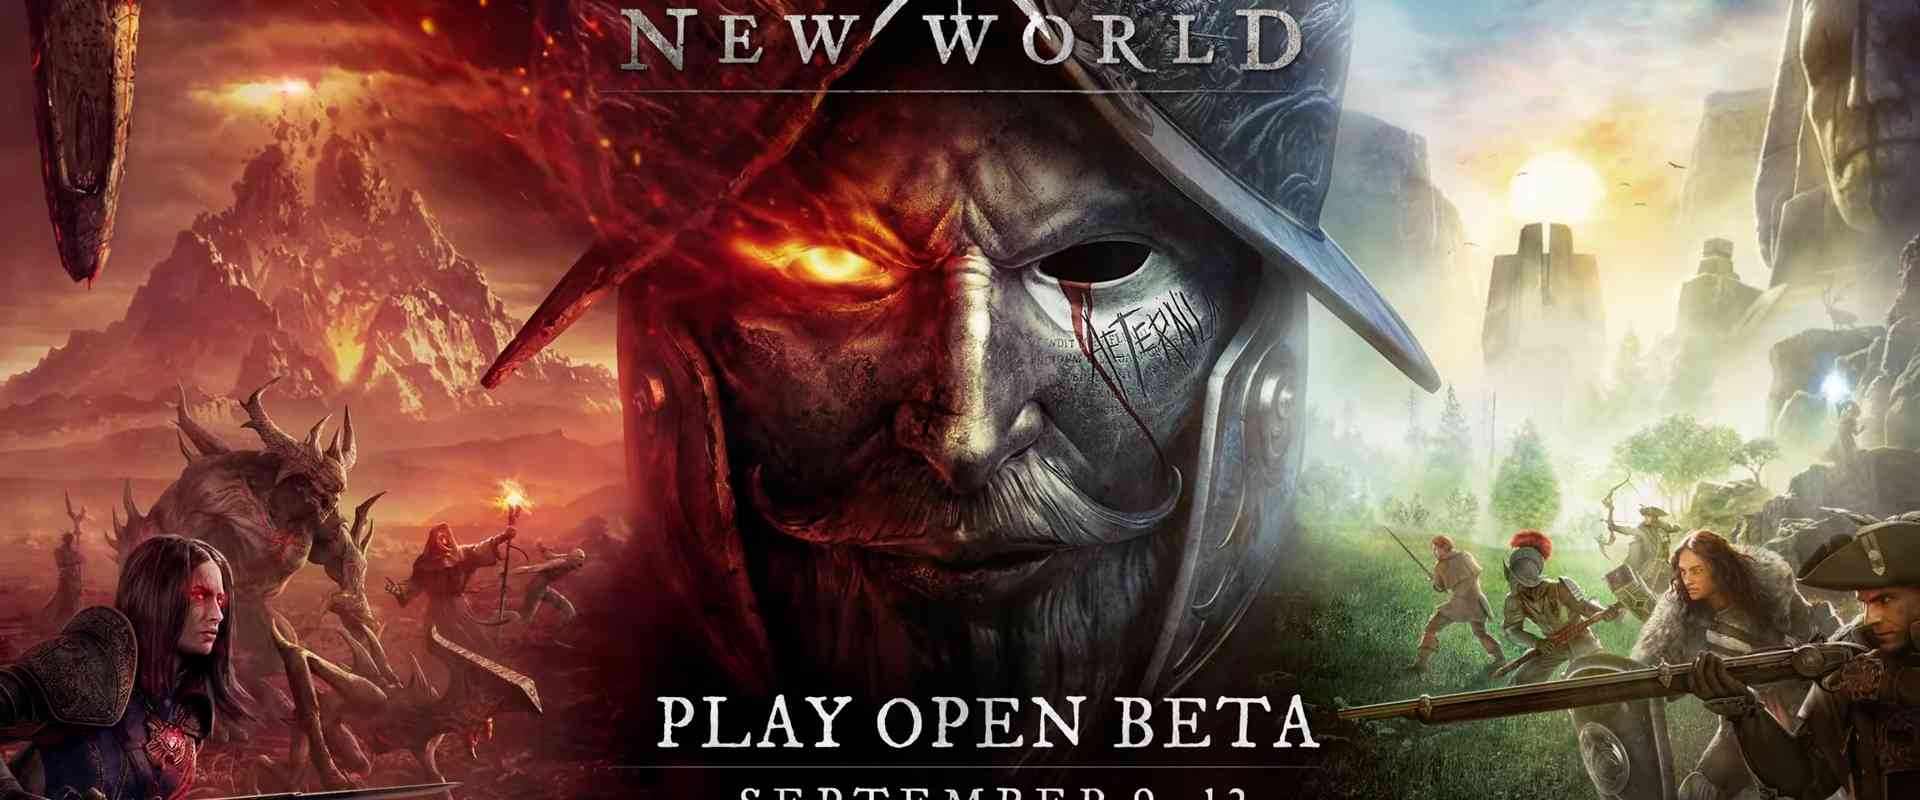 new world open beta september